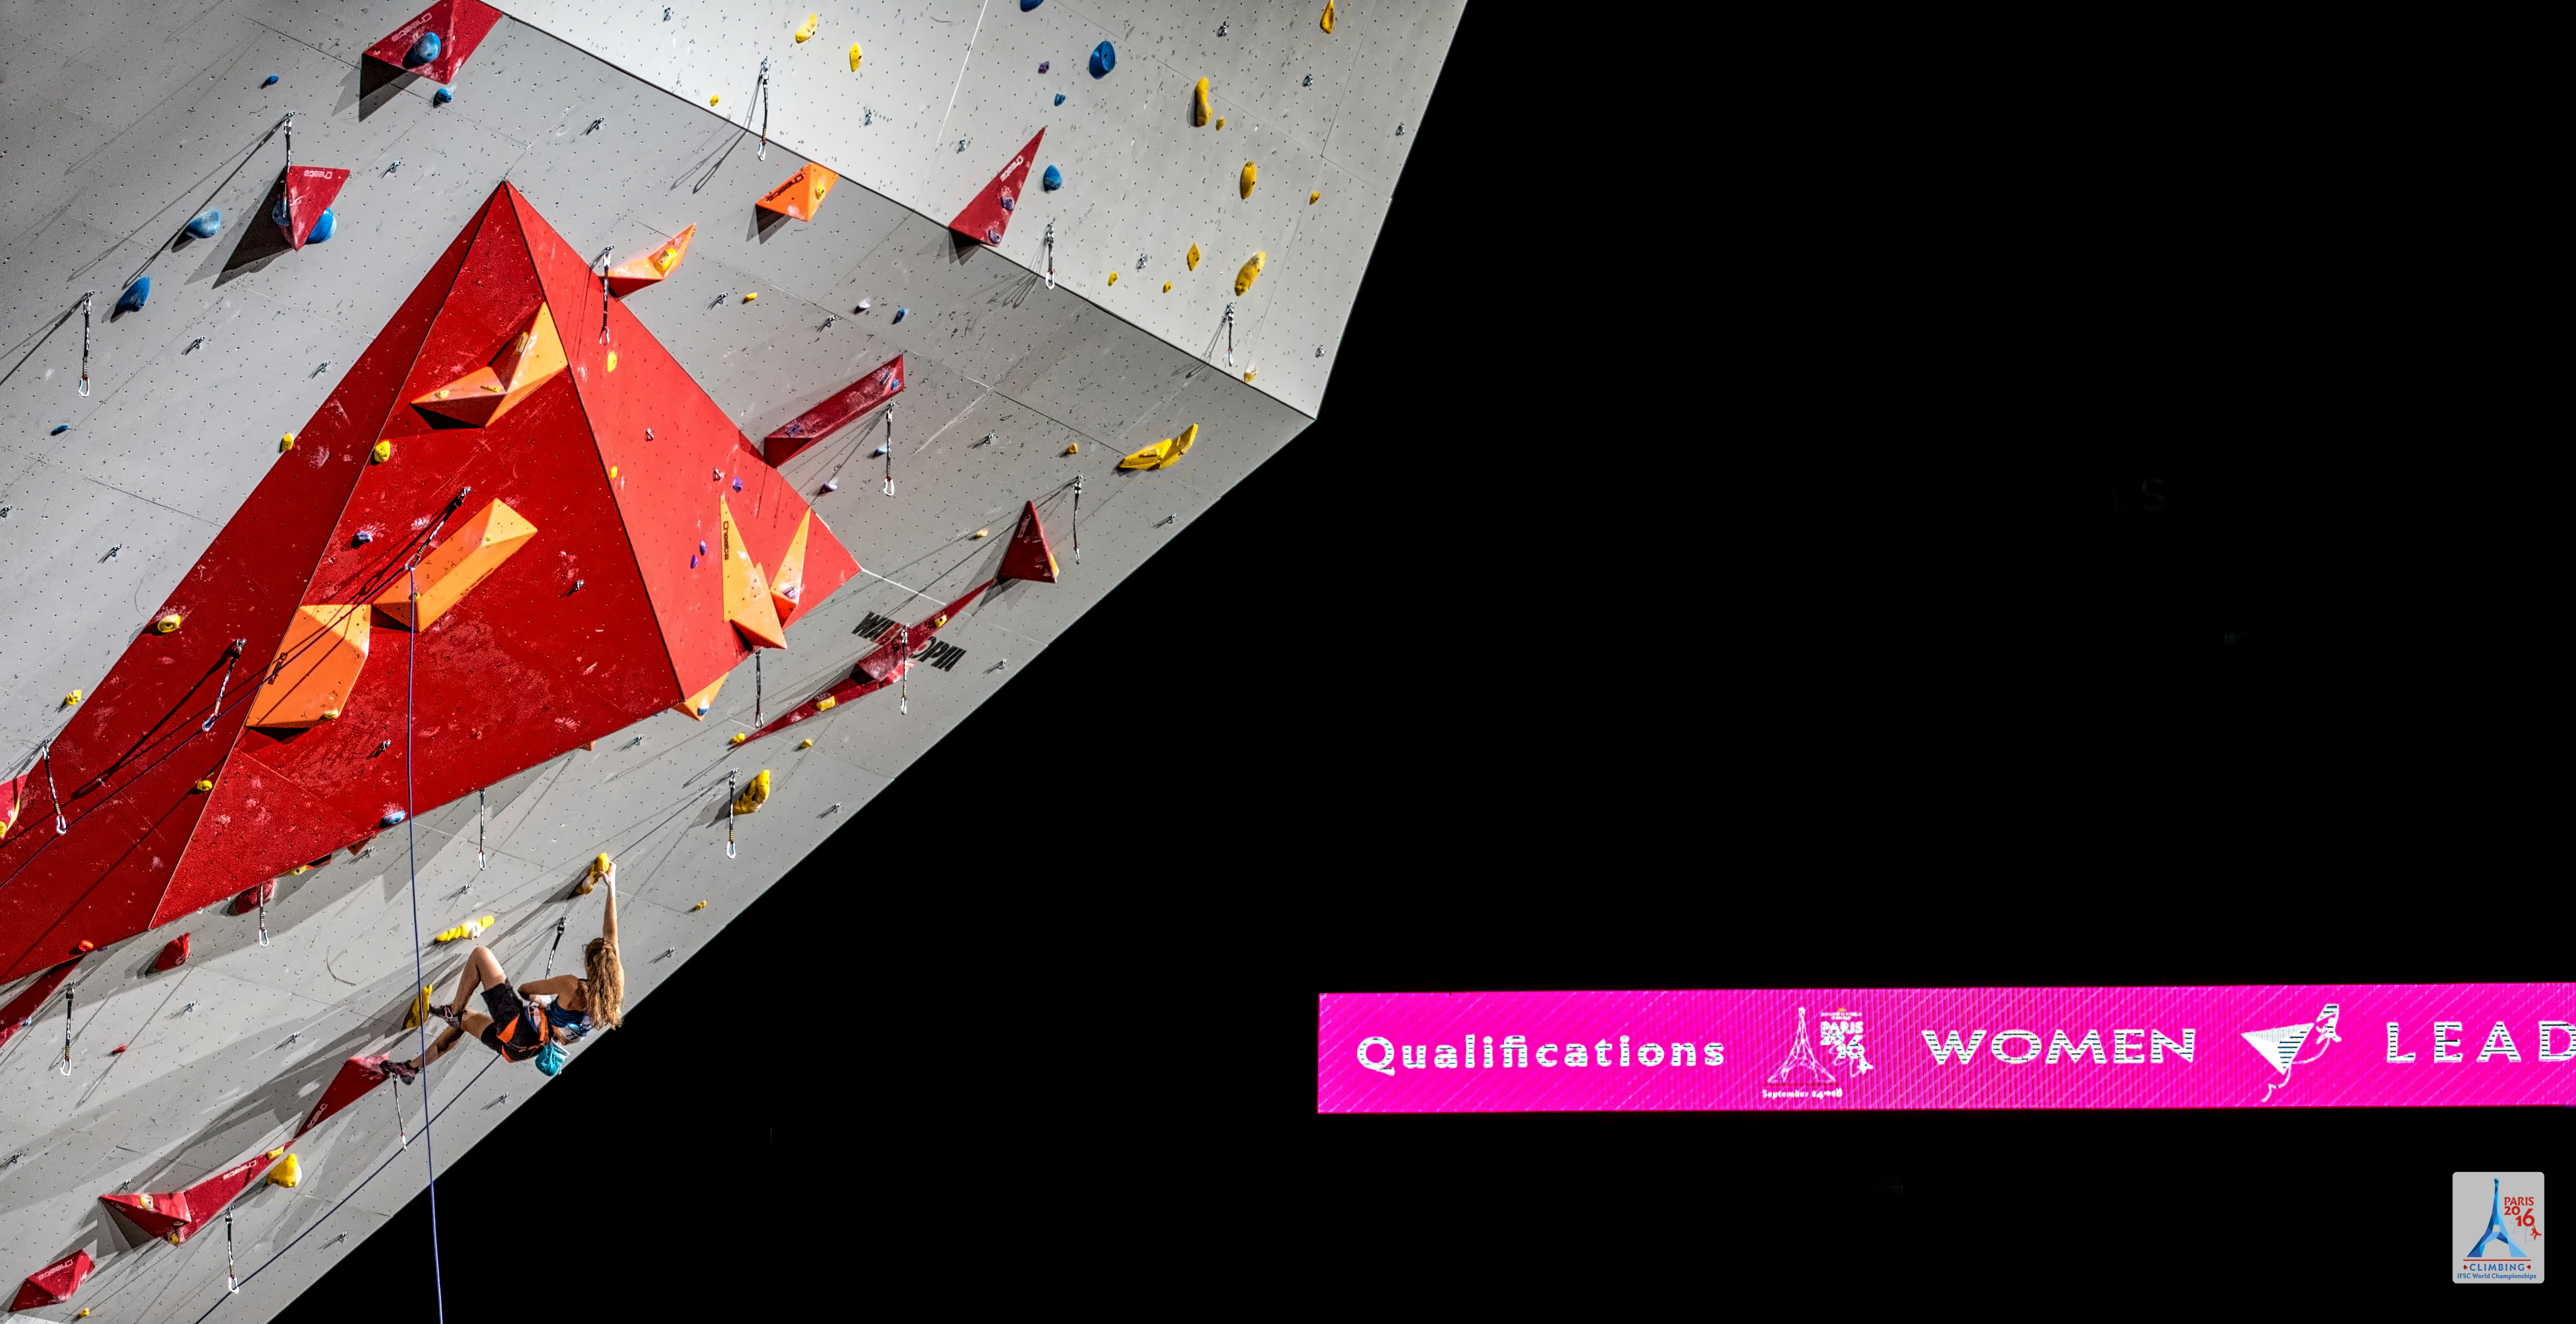 Чемпионат Мира по скалолазанию в Париже 2016. Дисциплина сложность (квалификационный раунд среди женщин):